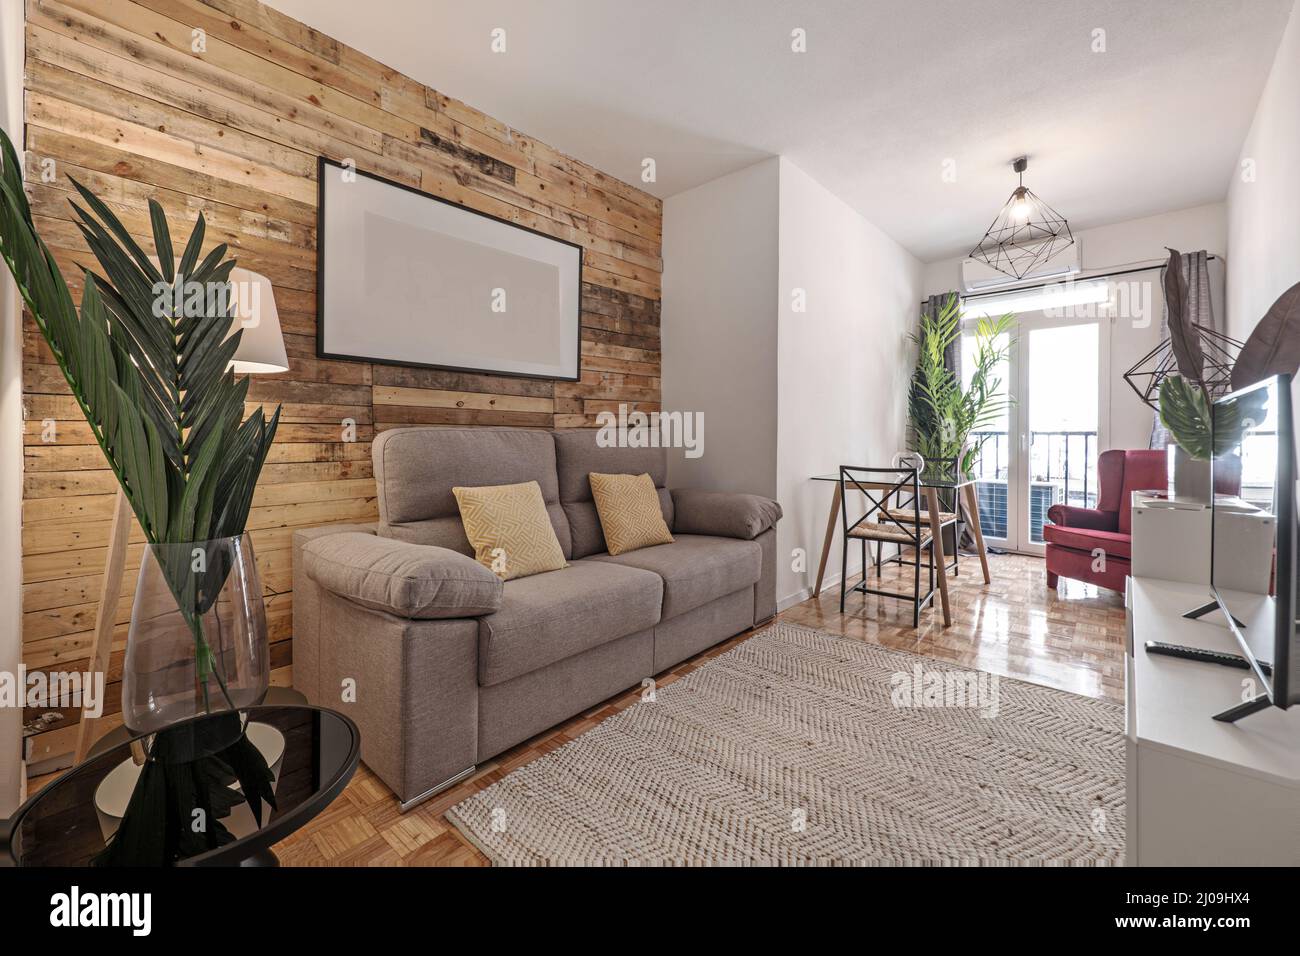 Wohnzimmer mit Wandbelägen, Palmenblatt in einer Glasvase, grauem Zweisitzer-Sofa und Naturfaserteppich Stockfoto